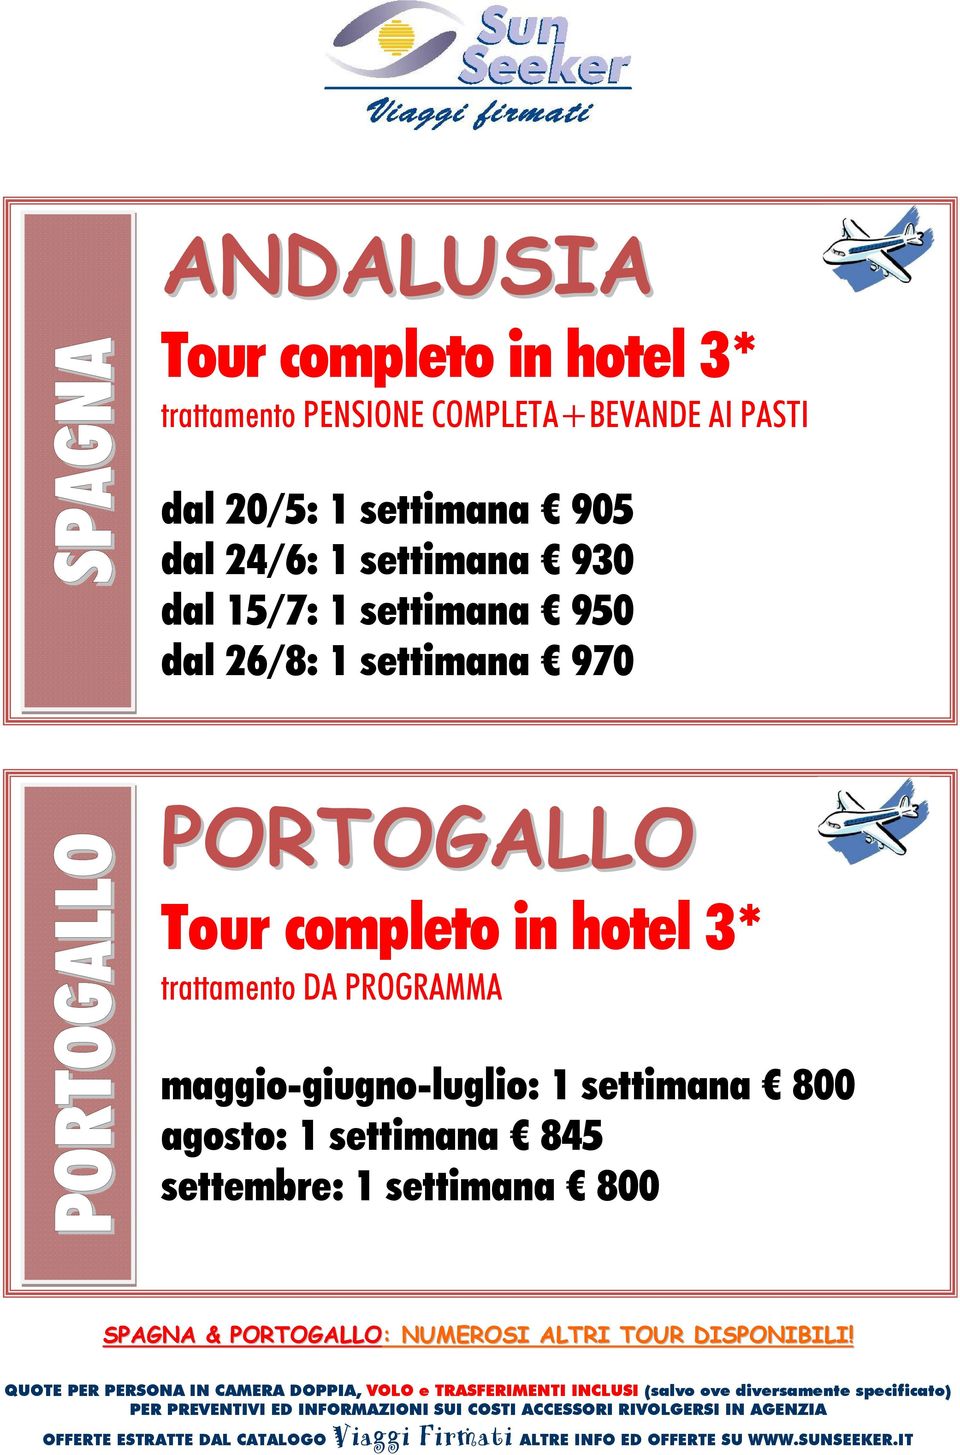 PORTOGALLO Tour completo in hotel 3* trattamento DA PROGRAMMA maggio-giugno-luglio: 1 settimana 800